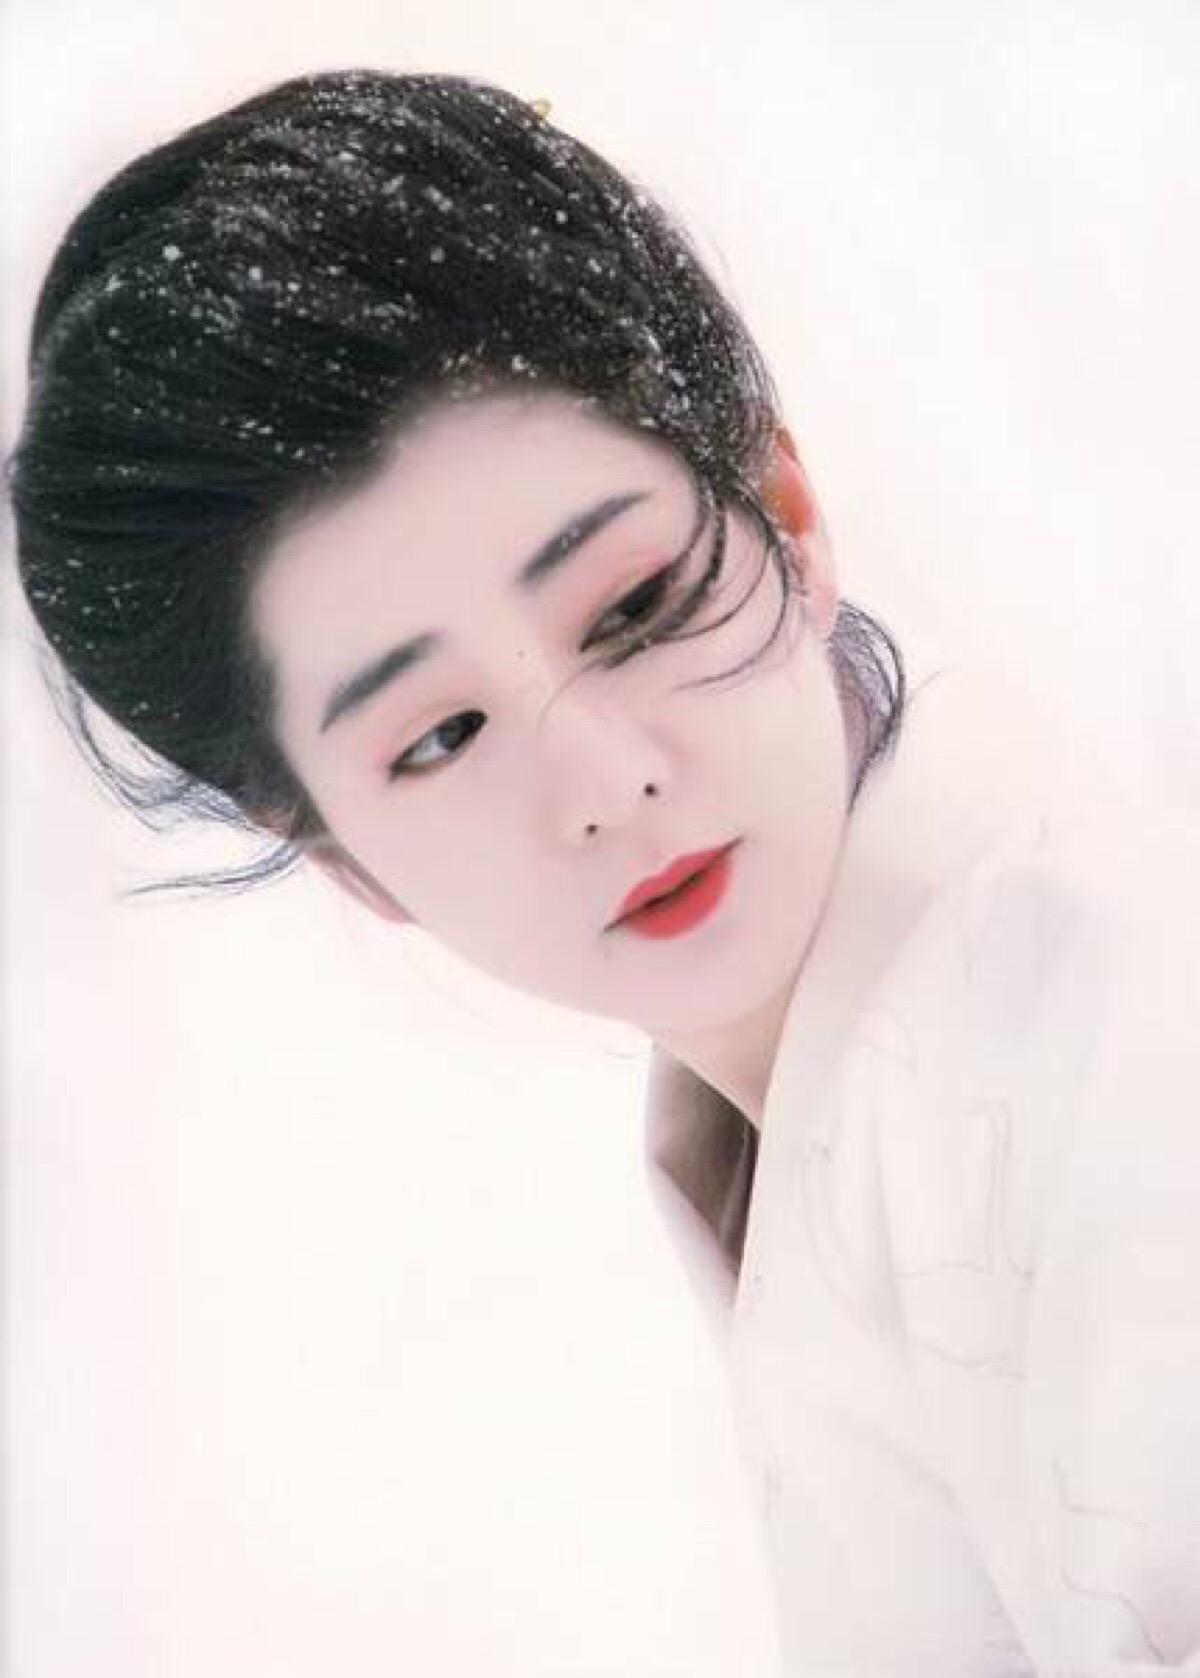 在你心目中,日本时代剧里古装打扮最美的女(男)星是谁? 